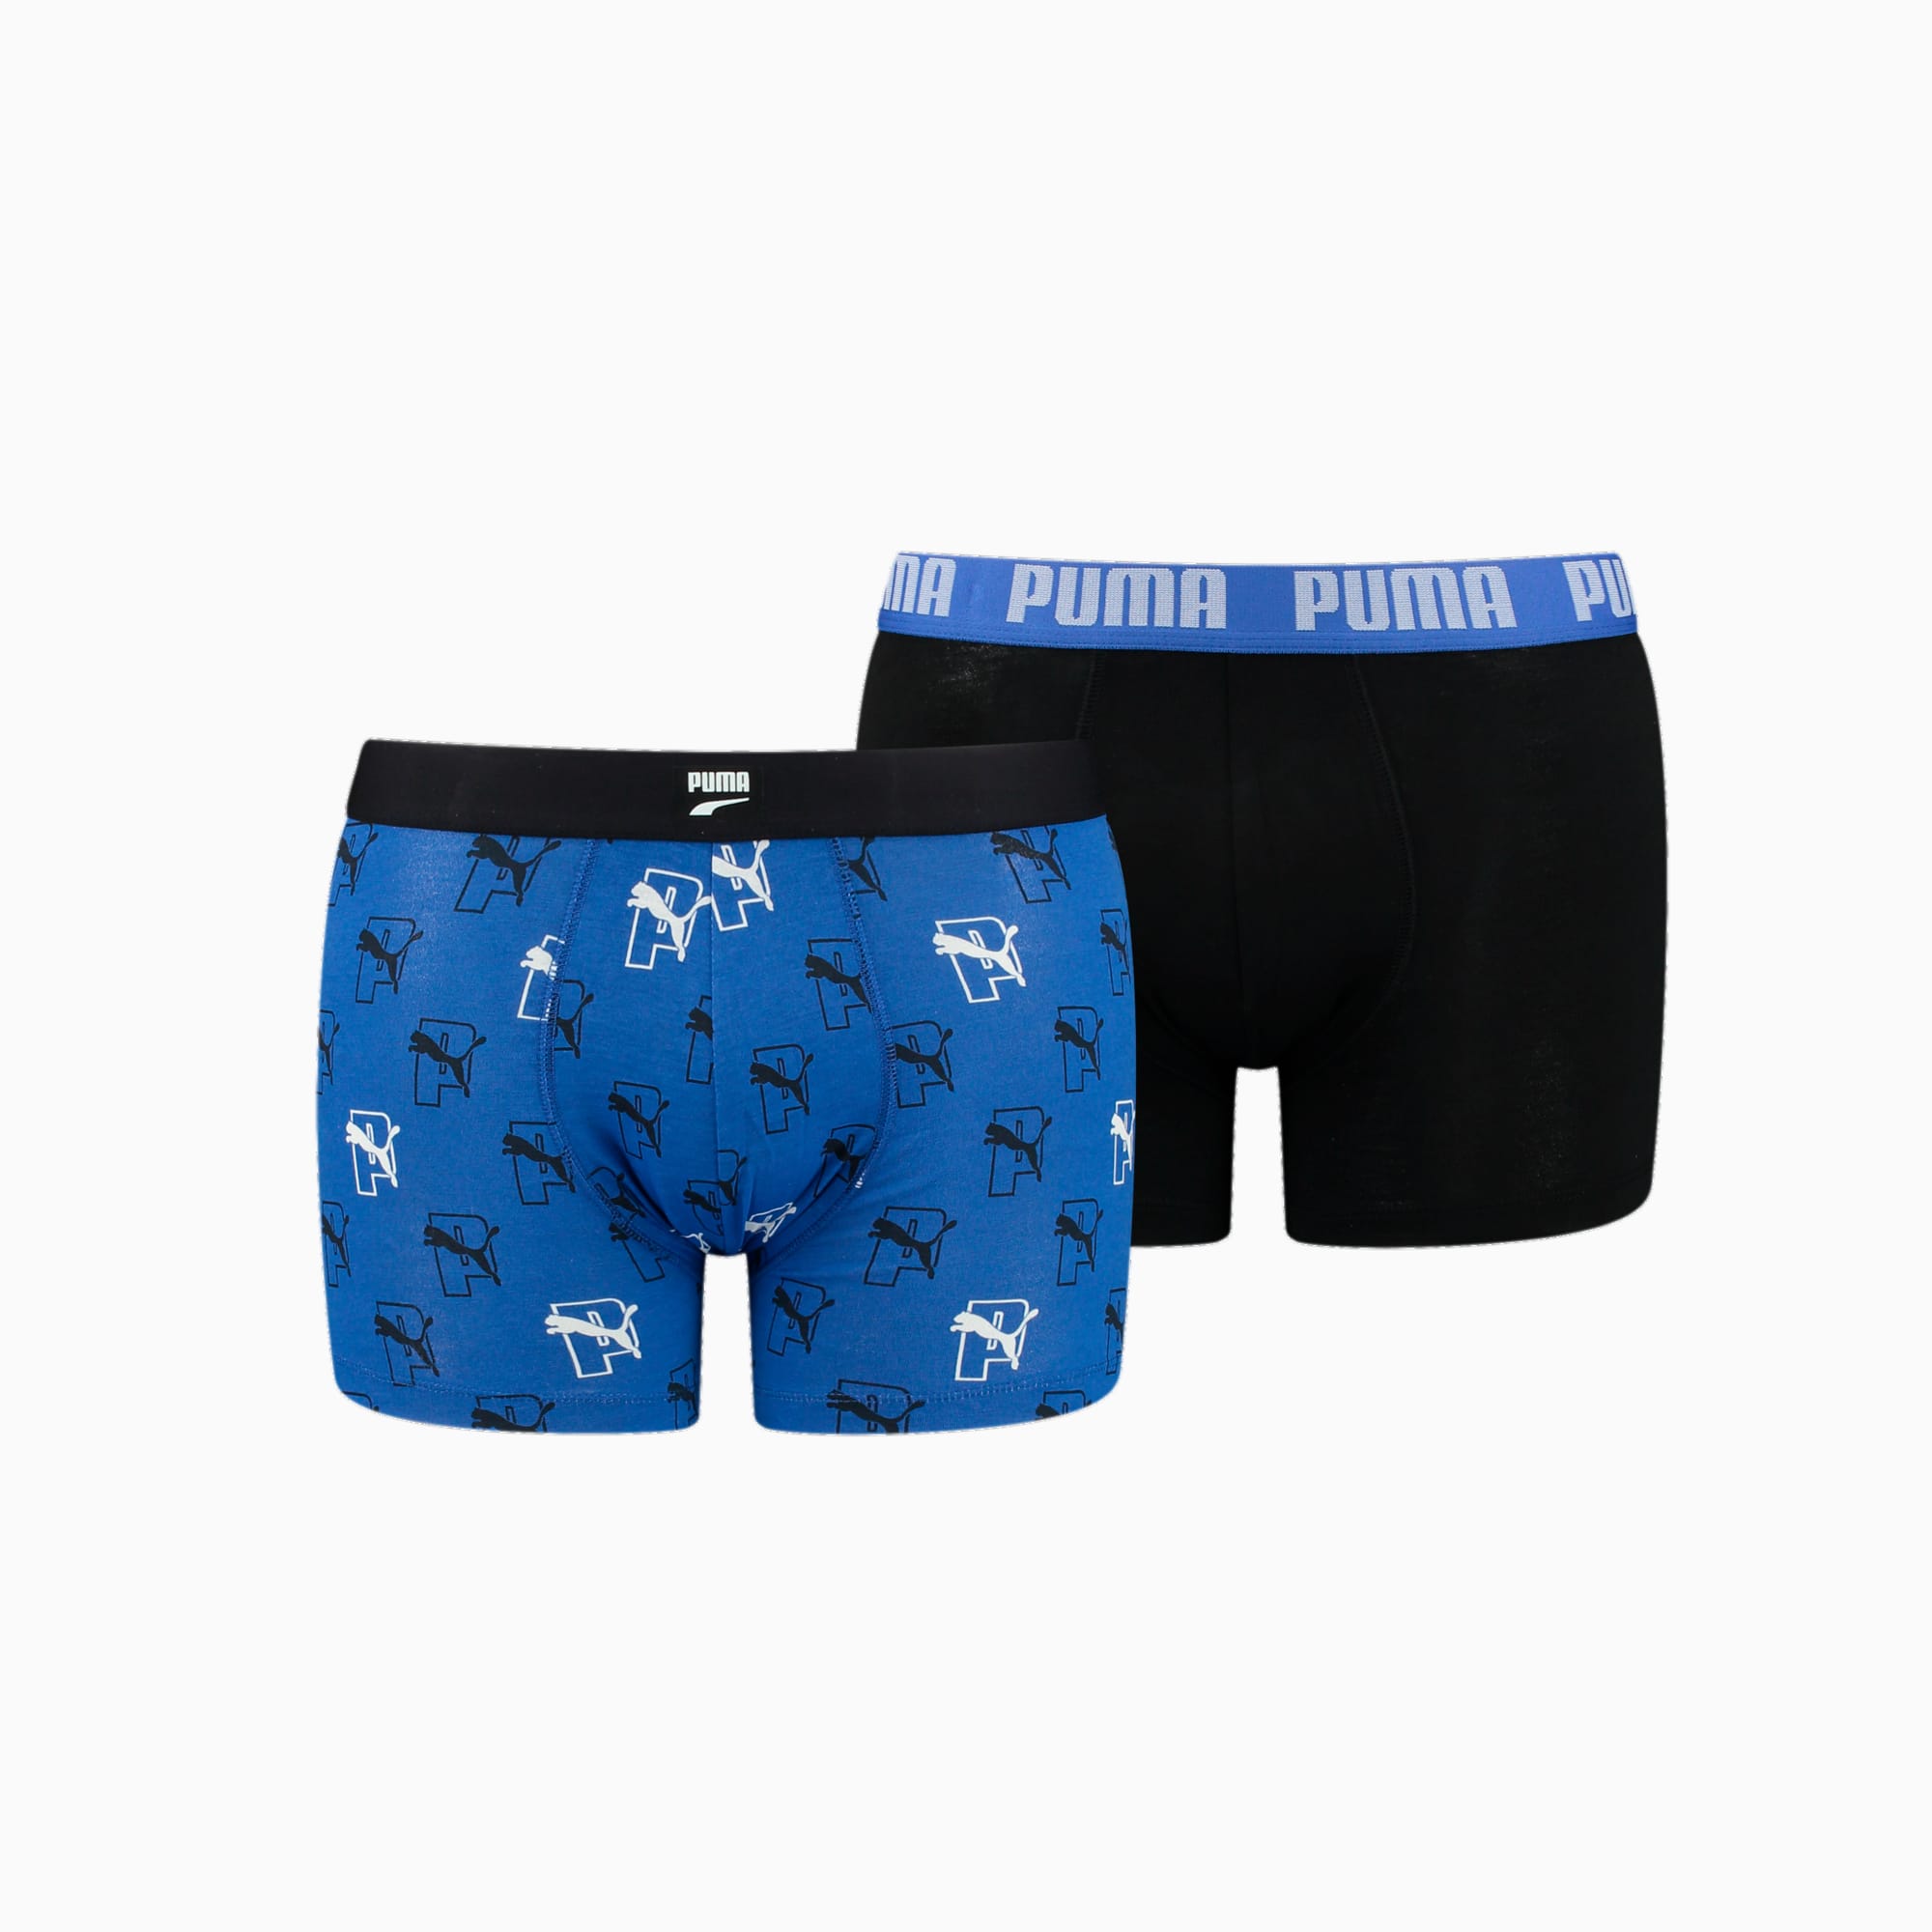 PUMA Boxershorts Met Doorlopend Logo, Blauw/Zwart